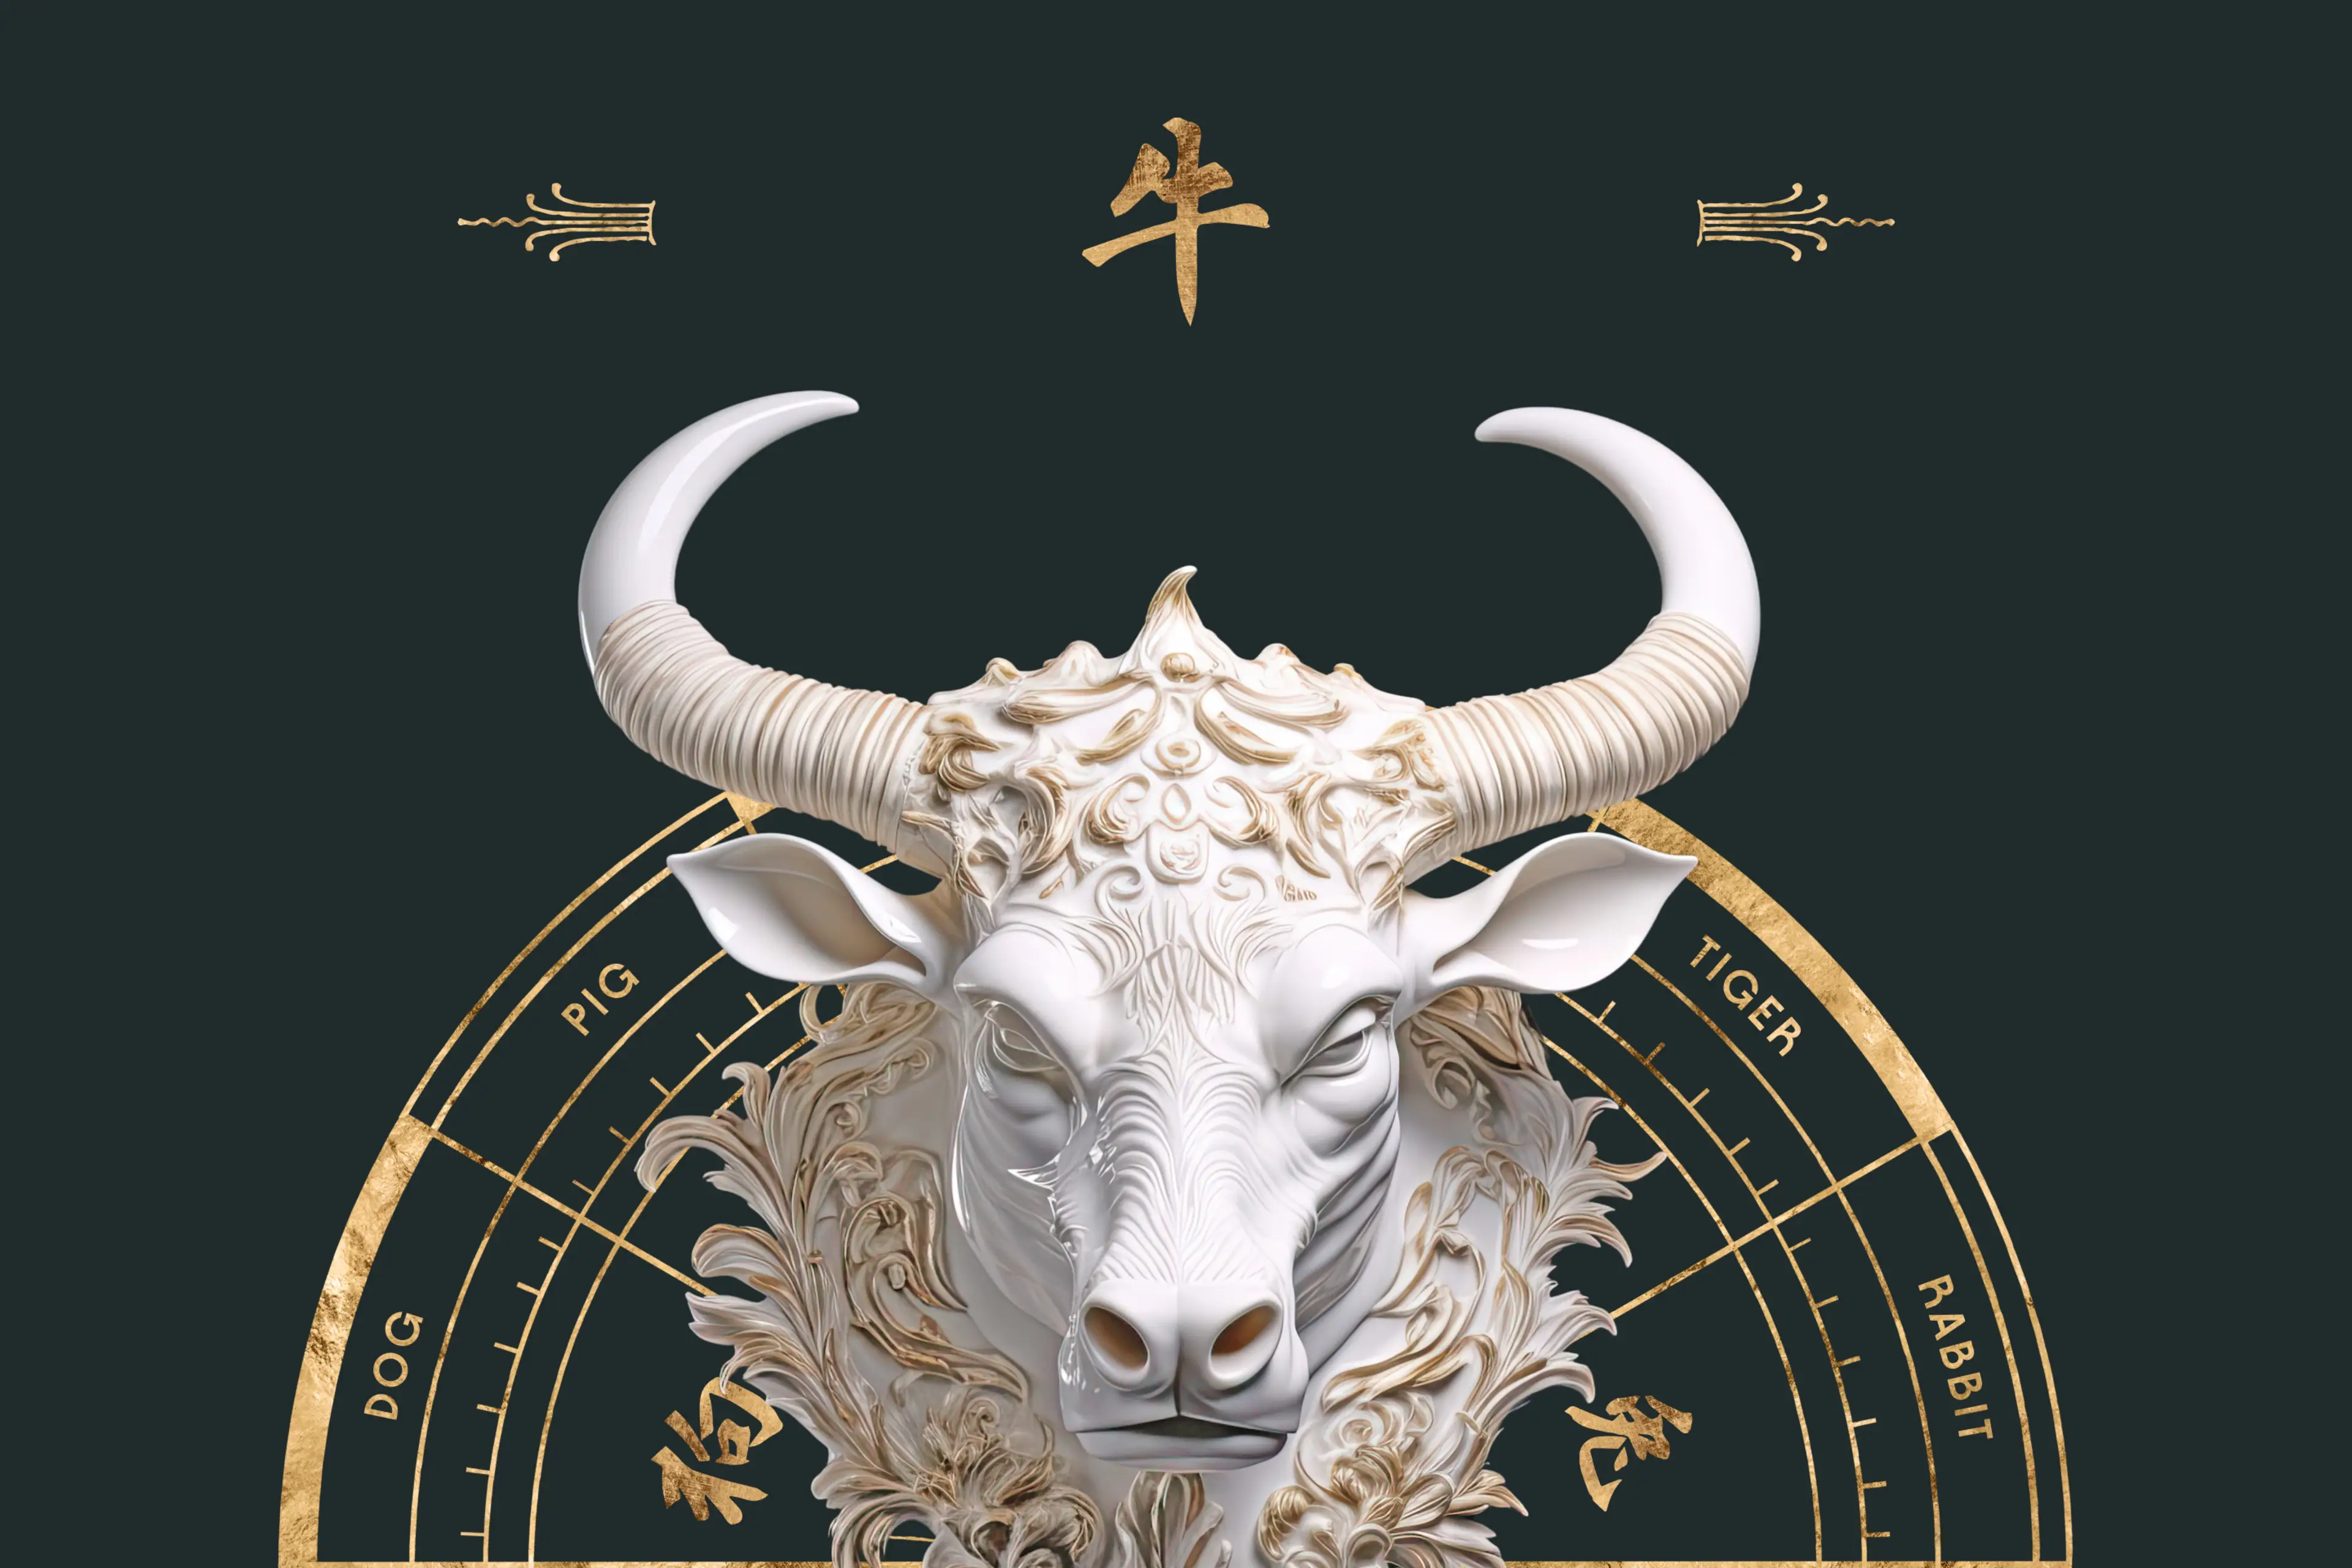 Ox Chinese Zodiac Sign